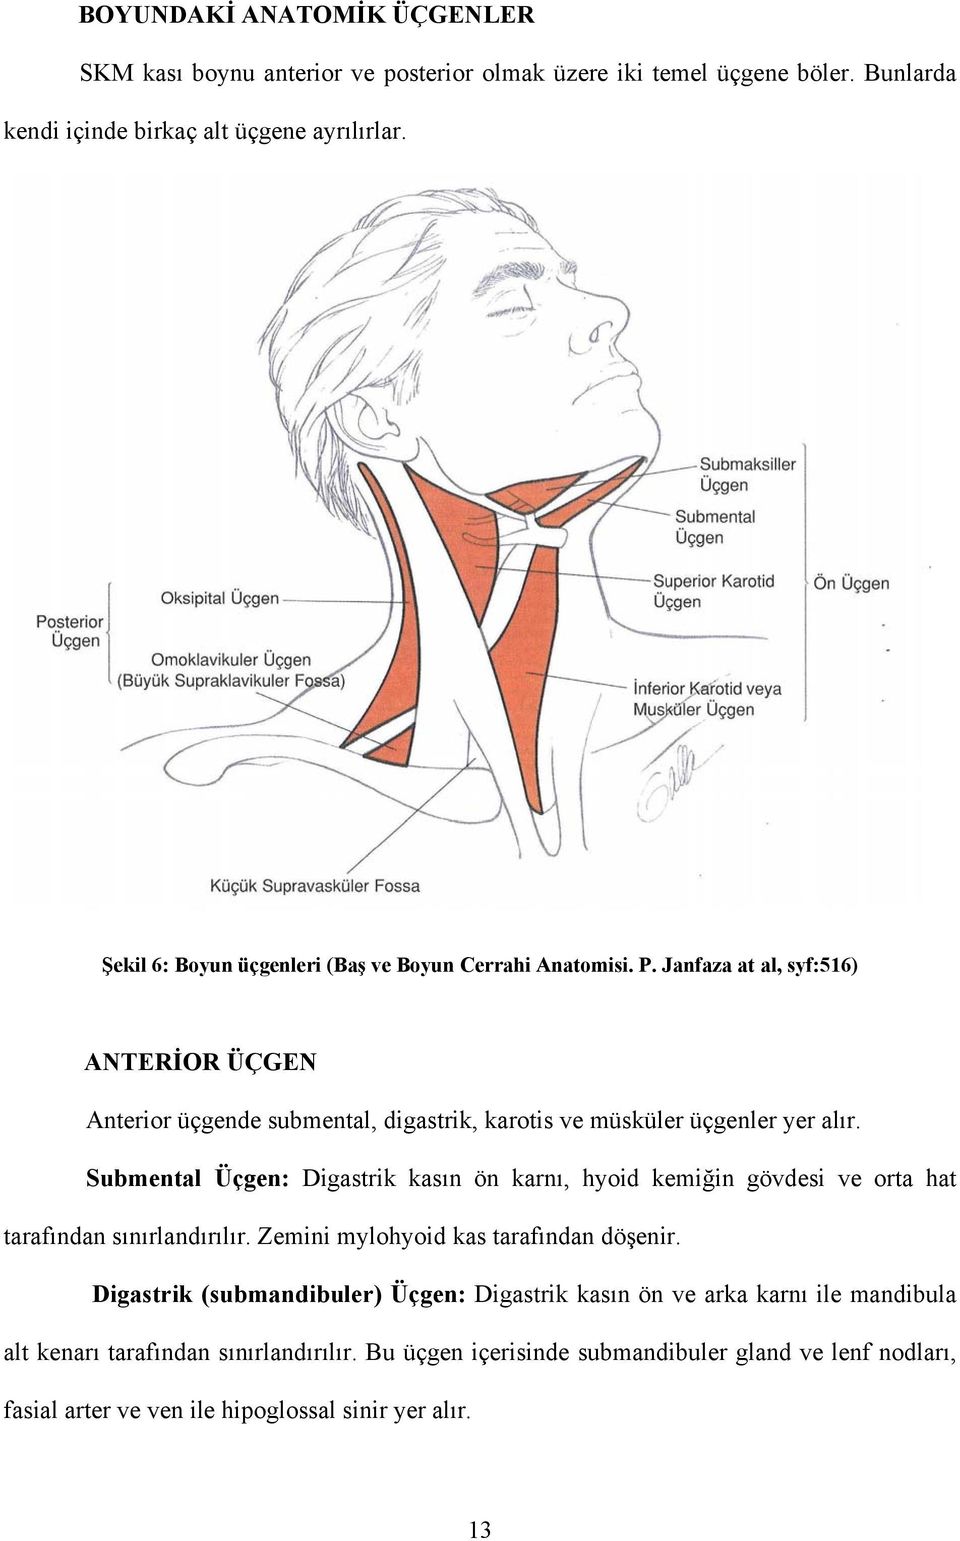 Submental Üçgen: Digastrik kasın ön karnı, hyoid kemiğin gövdesi ve orta hat tarafından sınırlandırılır. Zemini mylohyoid kas tarafından döşenir.